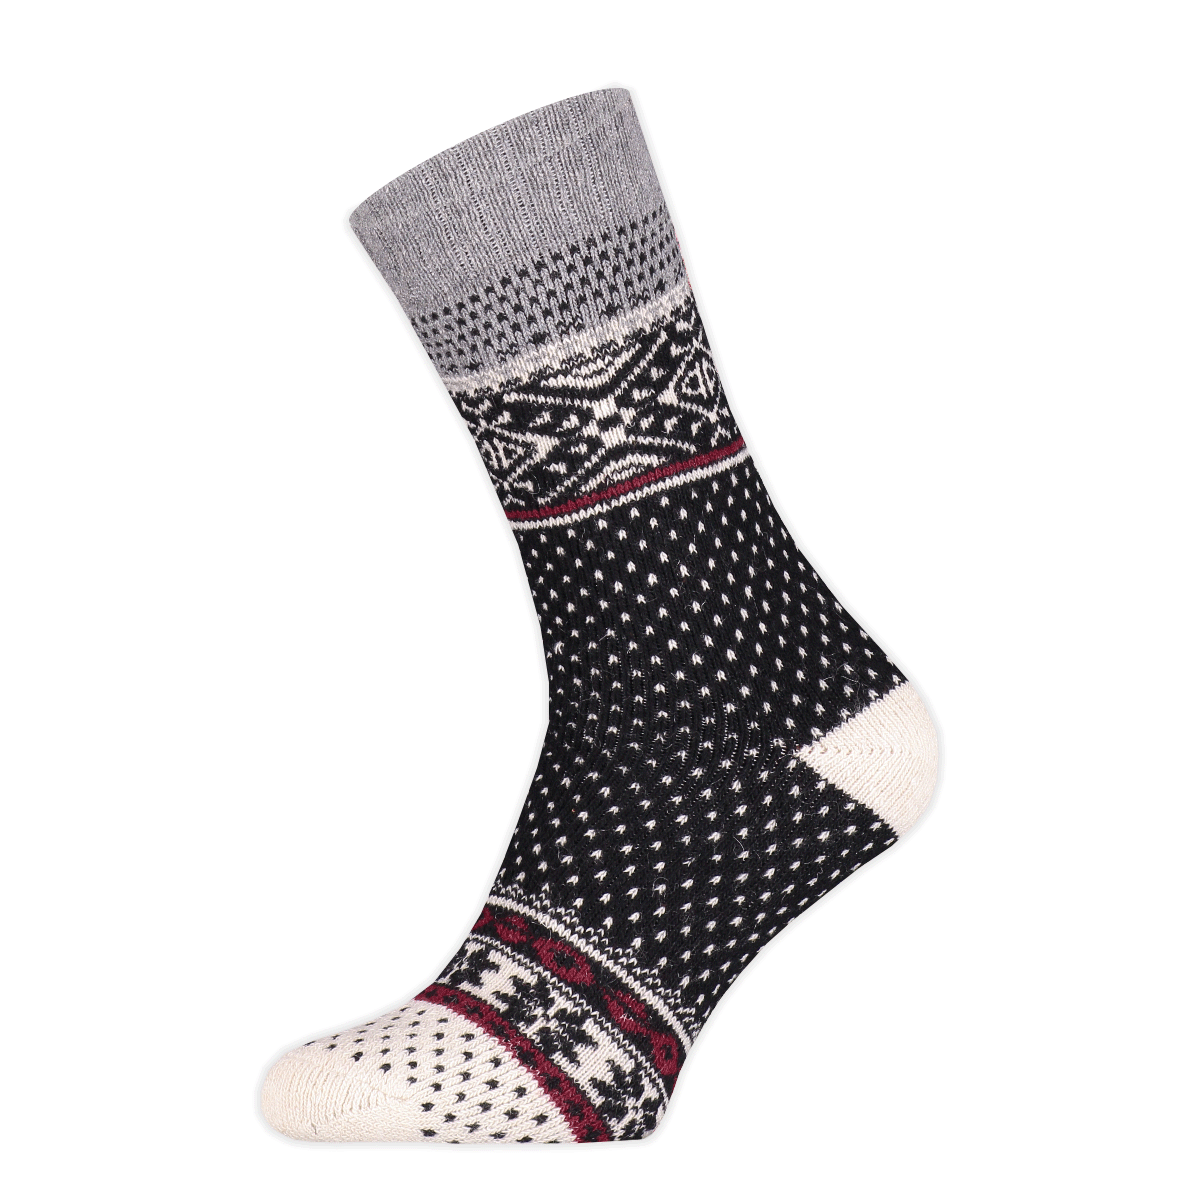 Basset - Heren - Wollen Nordic Socks - Herensokken - Winter - 45% Wol - Maat 43/46 - Zwart